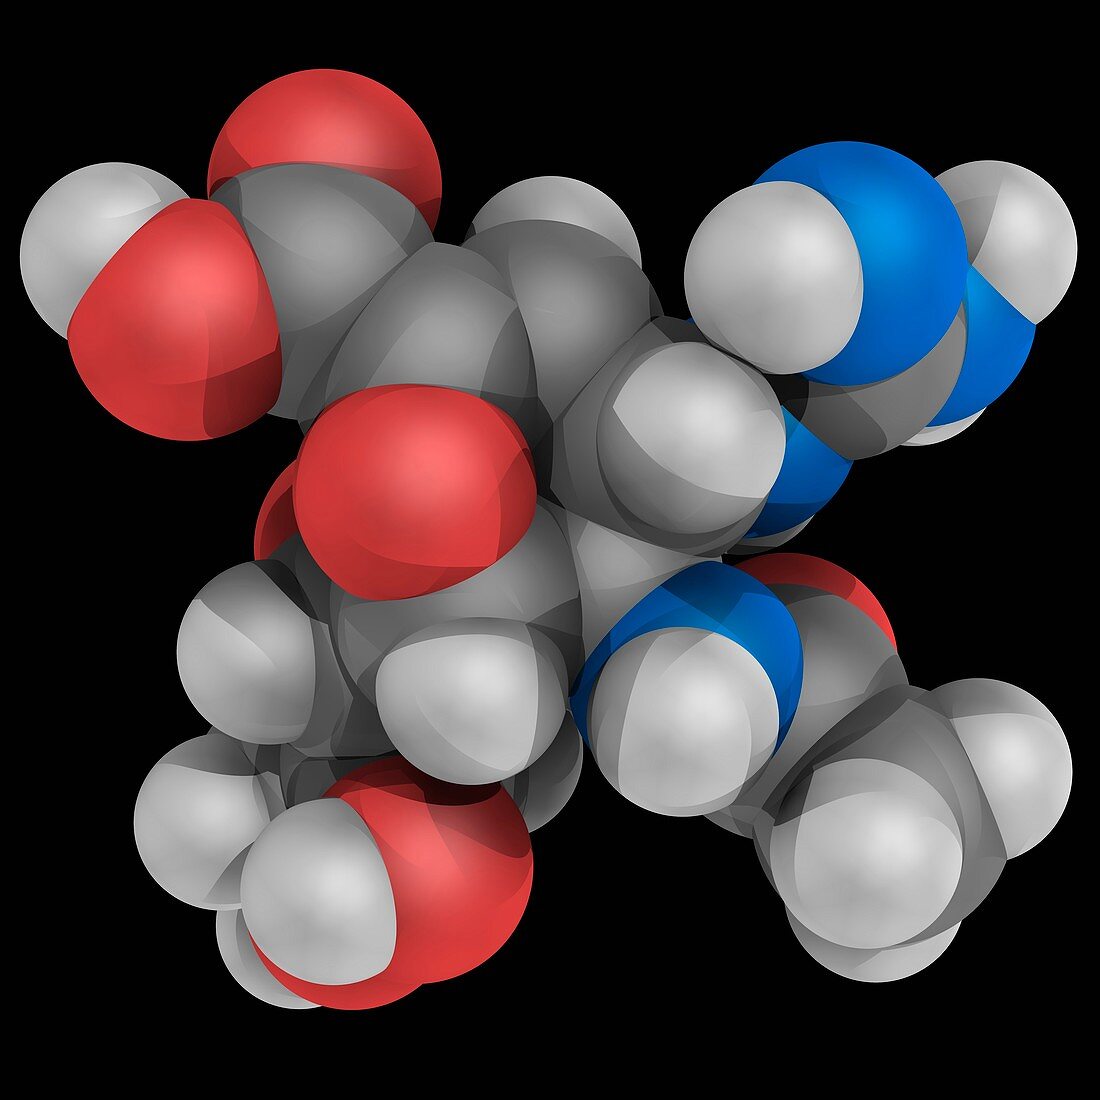 Zanamivir drug molecule